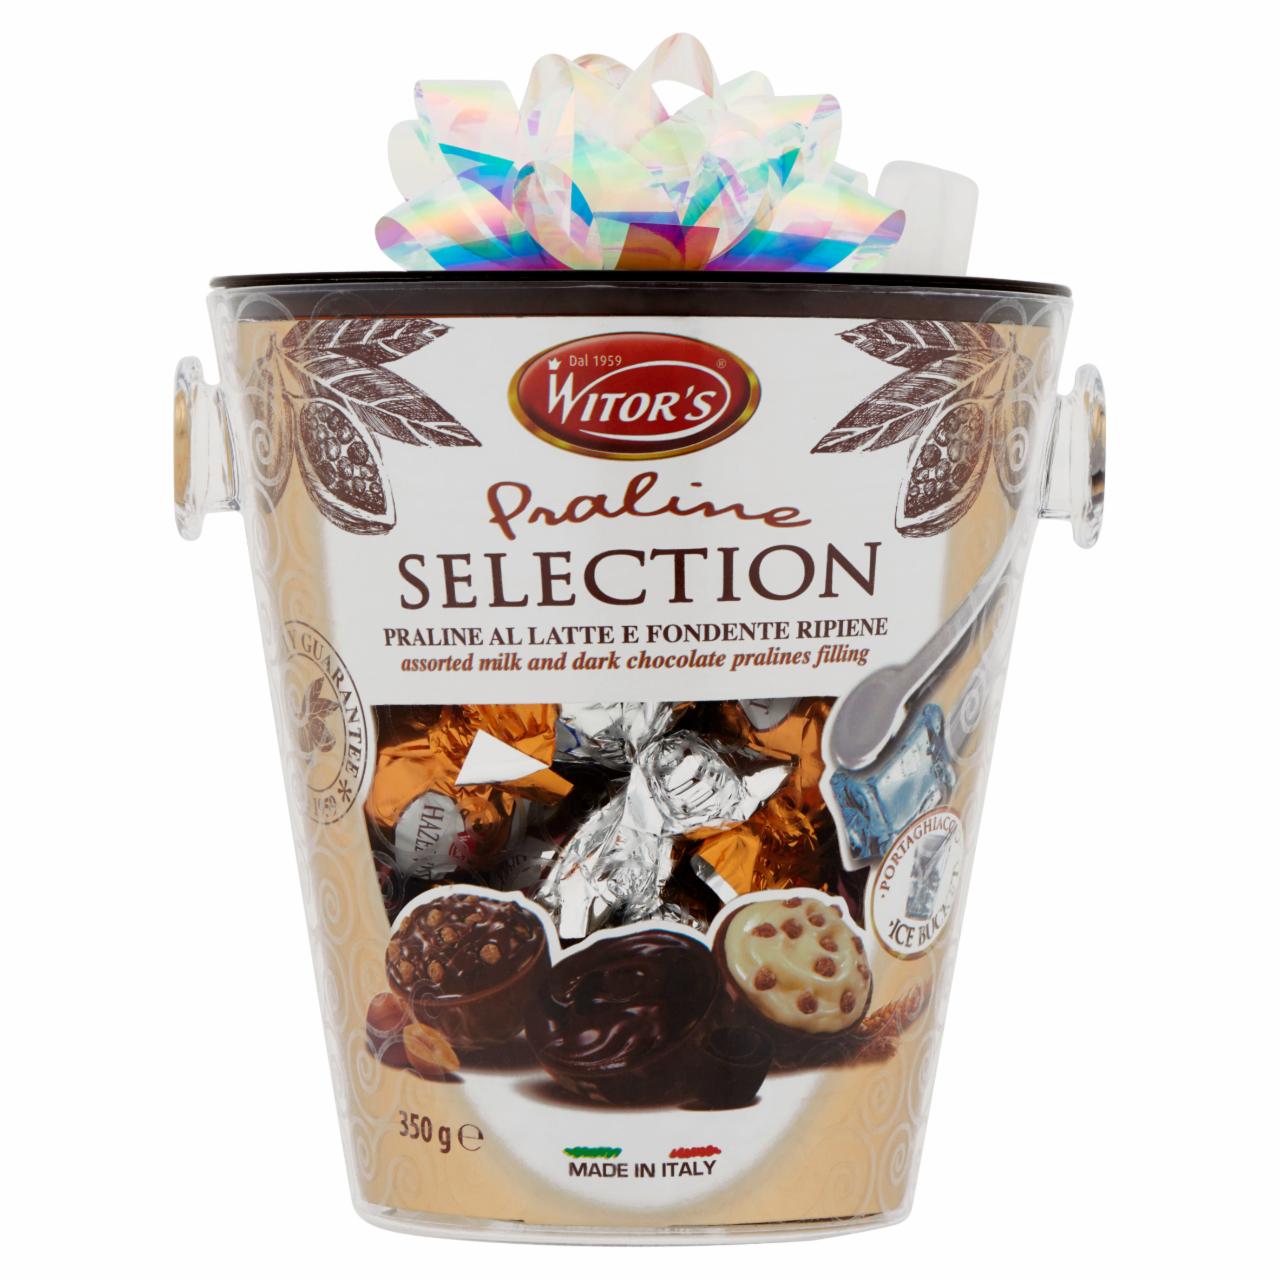 Képek - Witor's Praline Selection vegyes töltött praliné tejcsokoládéval és étcsokoládéval 350 g